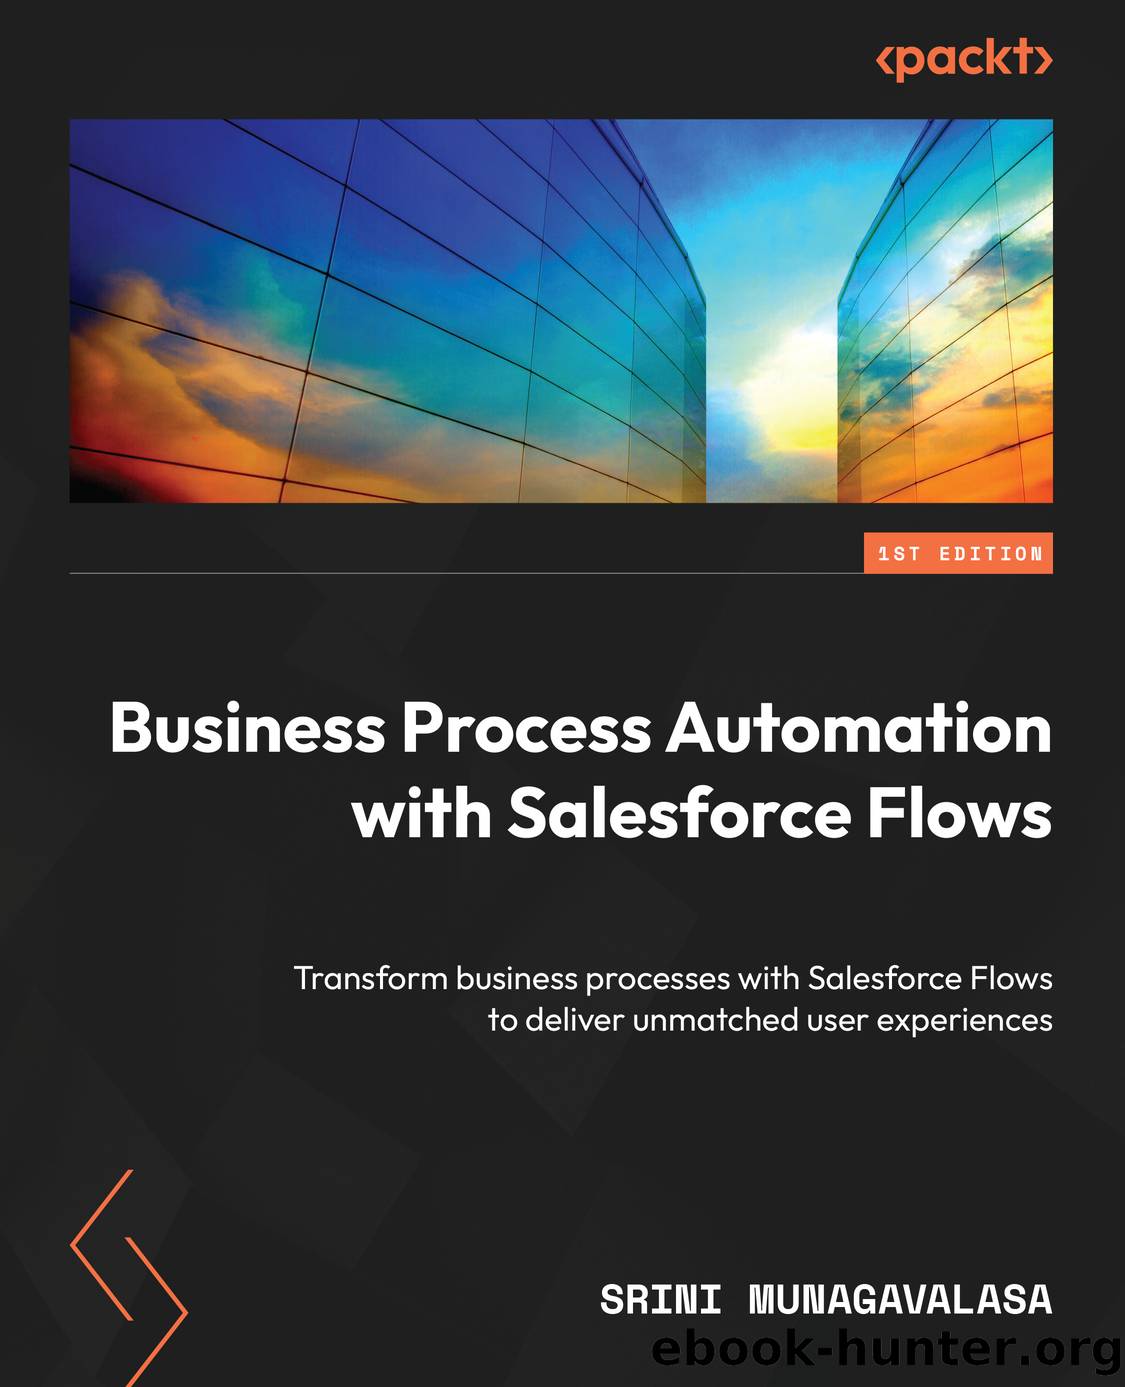 Business Process Automation with Salesforce Flows by Srini Munagavalasa